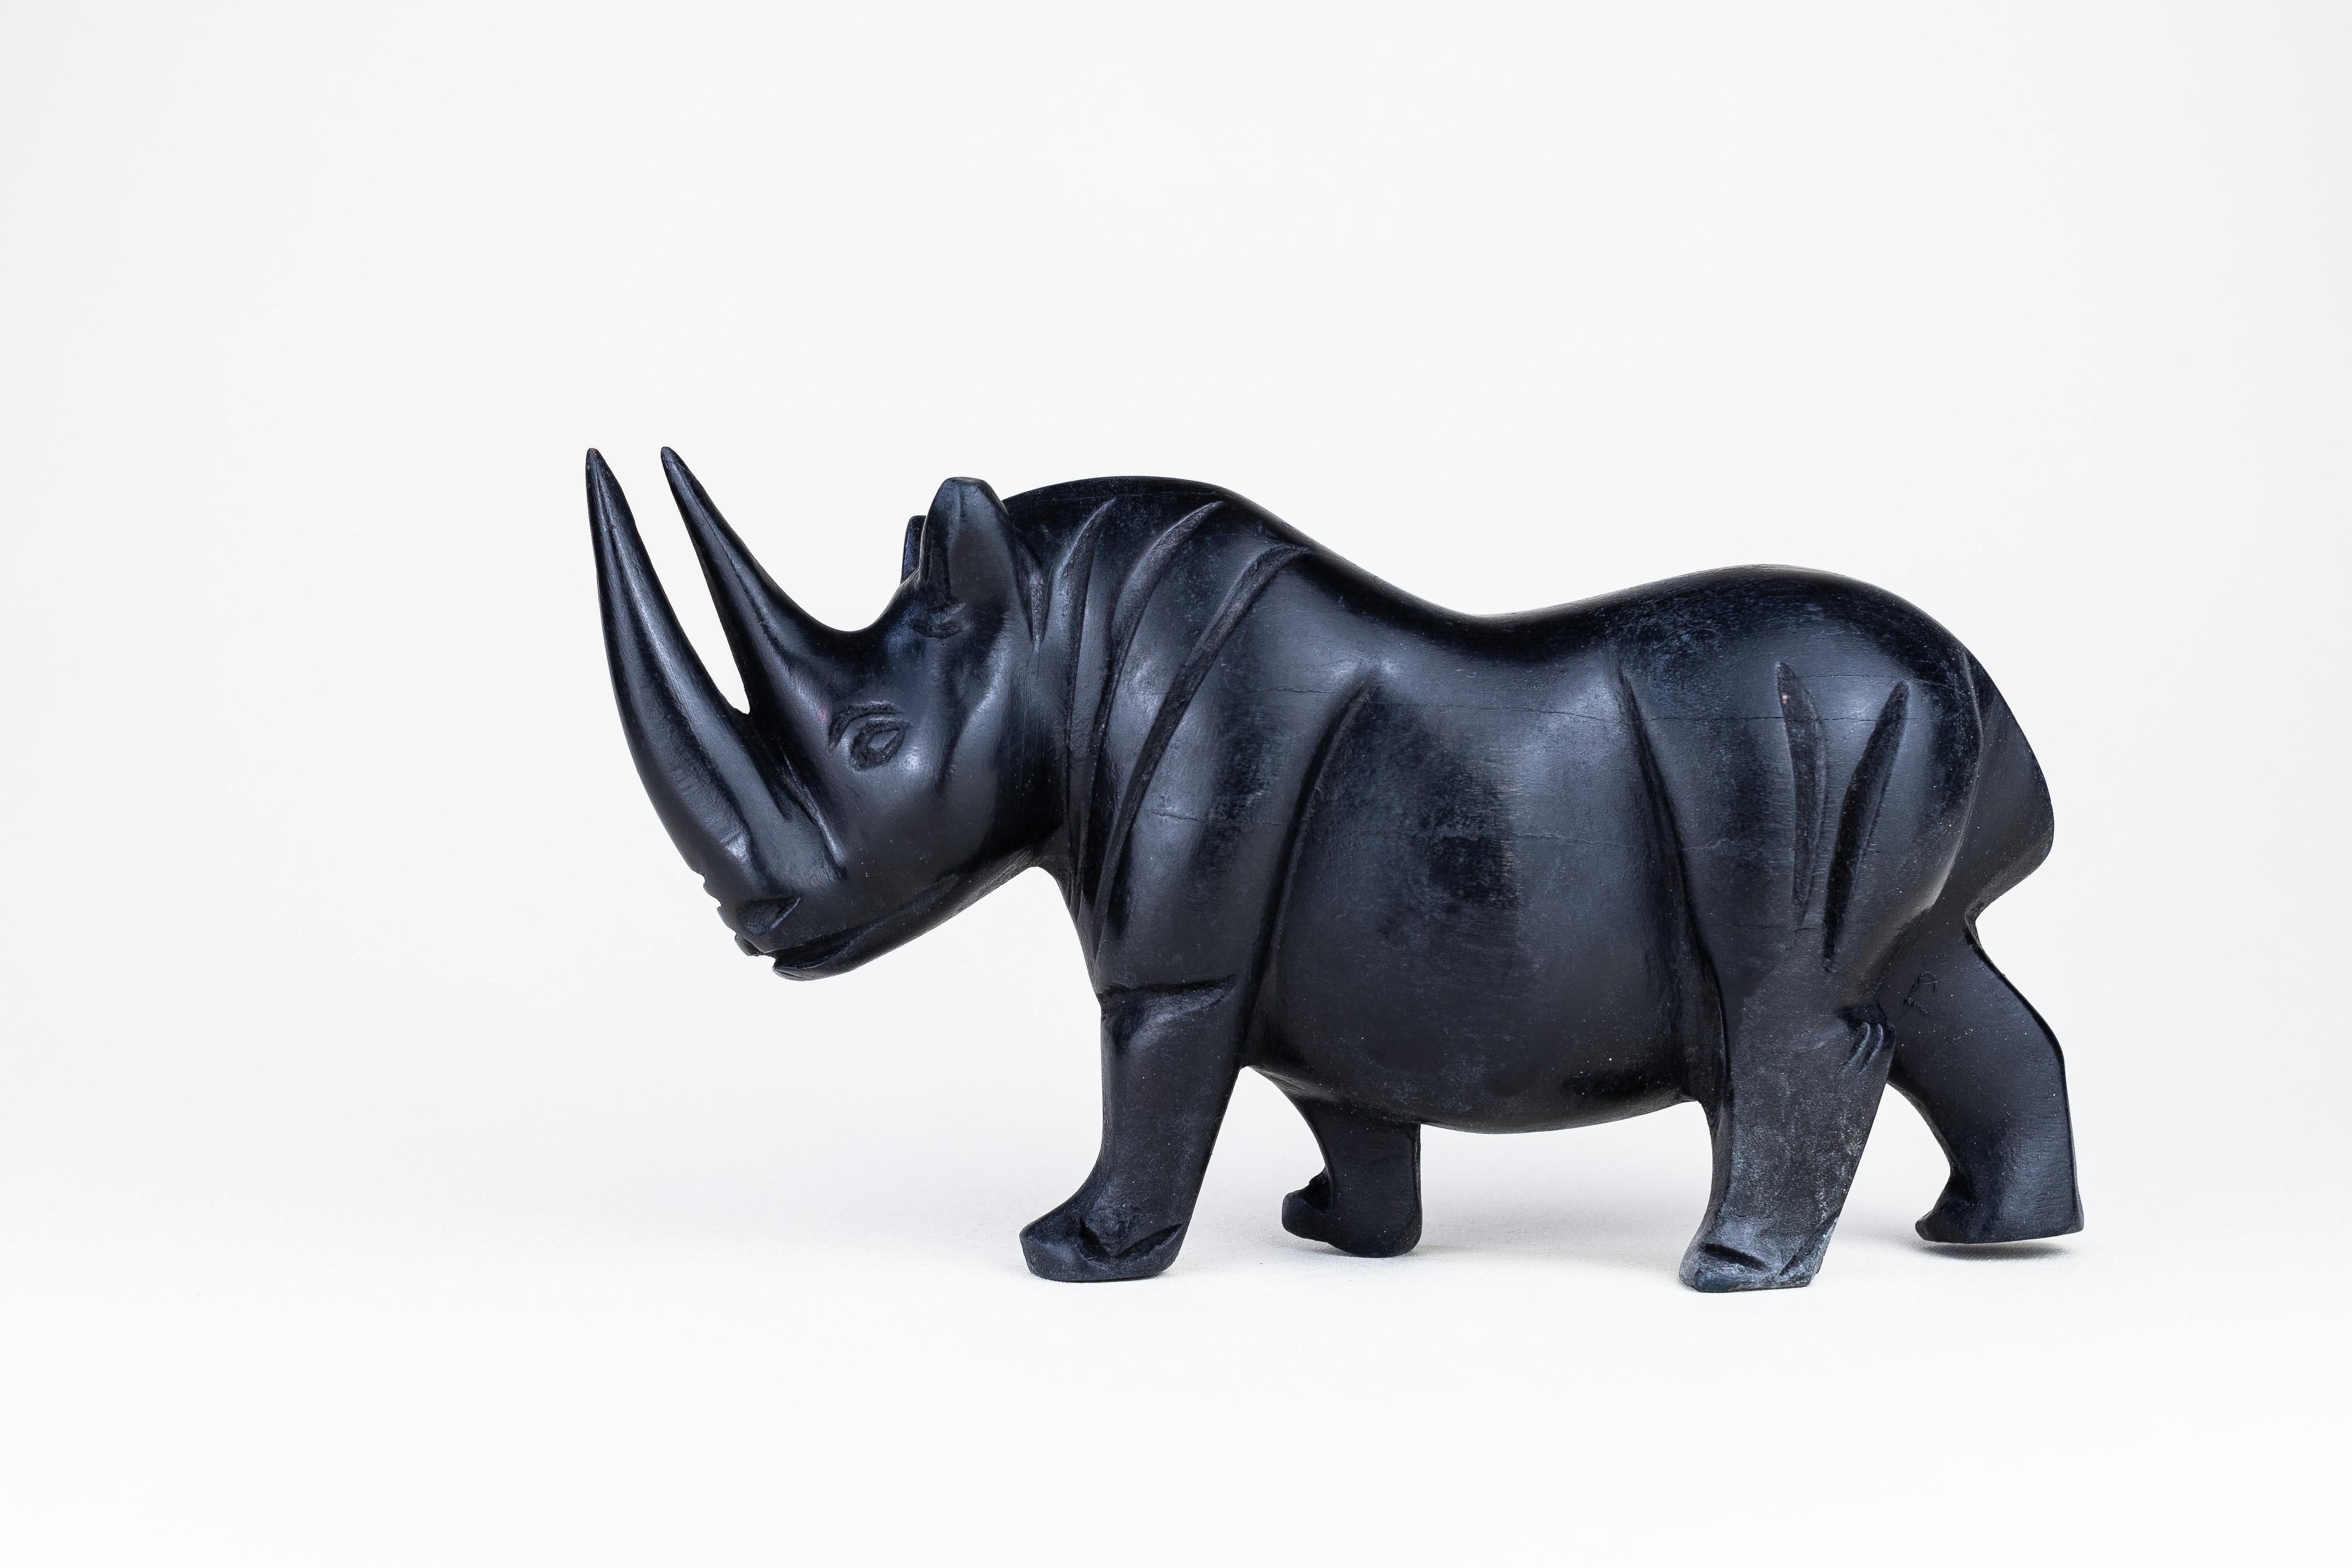 Rhinocéros vintage sculpté à la main. Datant des années 1980.

La sculpture est réalisée dans un bois exotique très lourd et dense (pas de l'ébène).

La surface a été ébonisée (à l'origine) pour lui donner un aspect moderne, sombre et